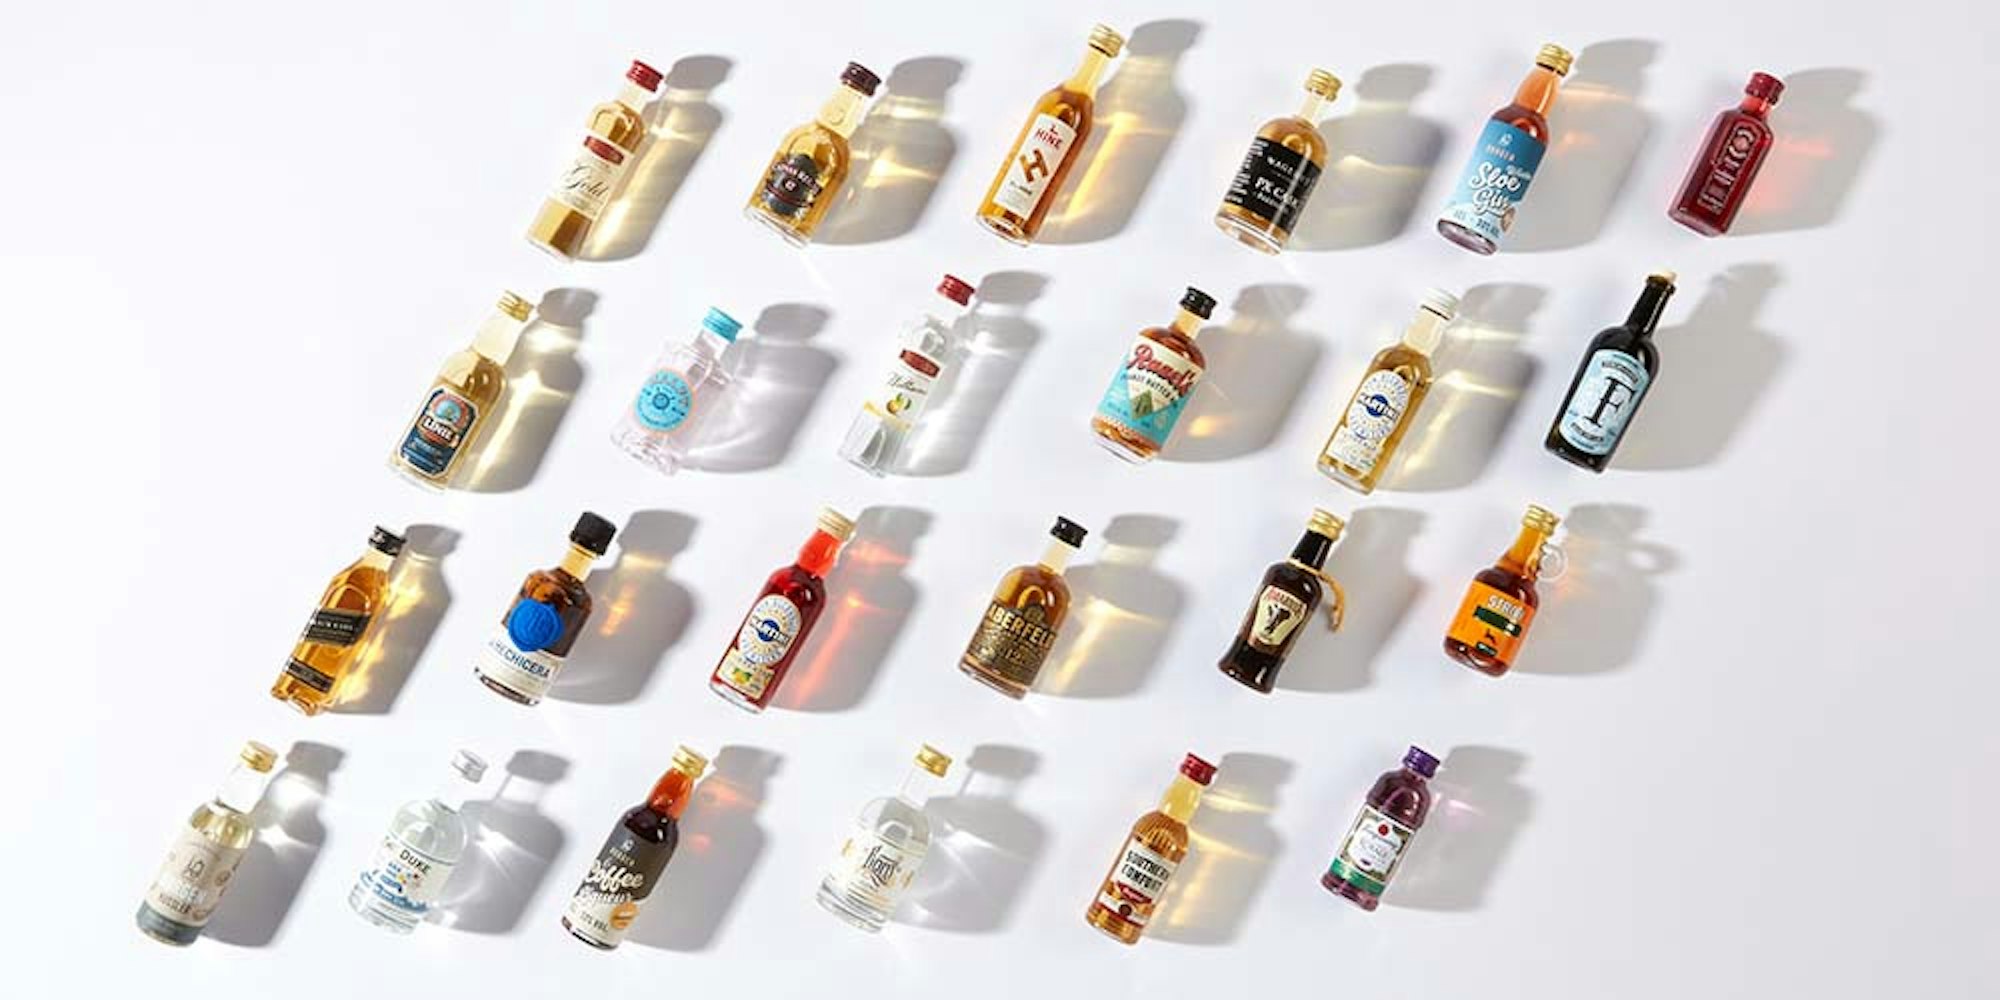 24 Spirituosenflaschen aus dem Adventskalender von Amazon.